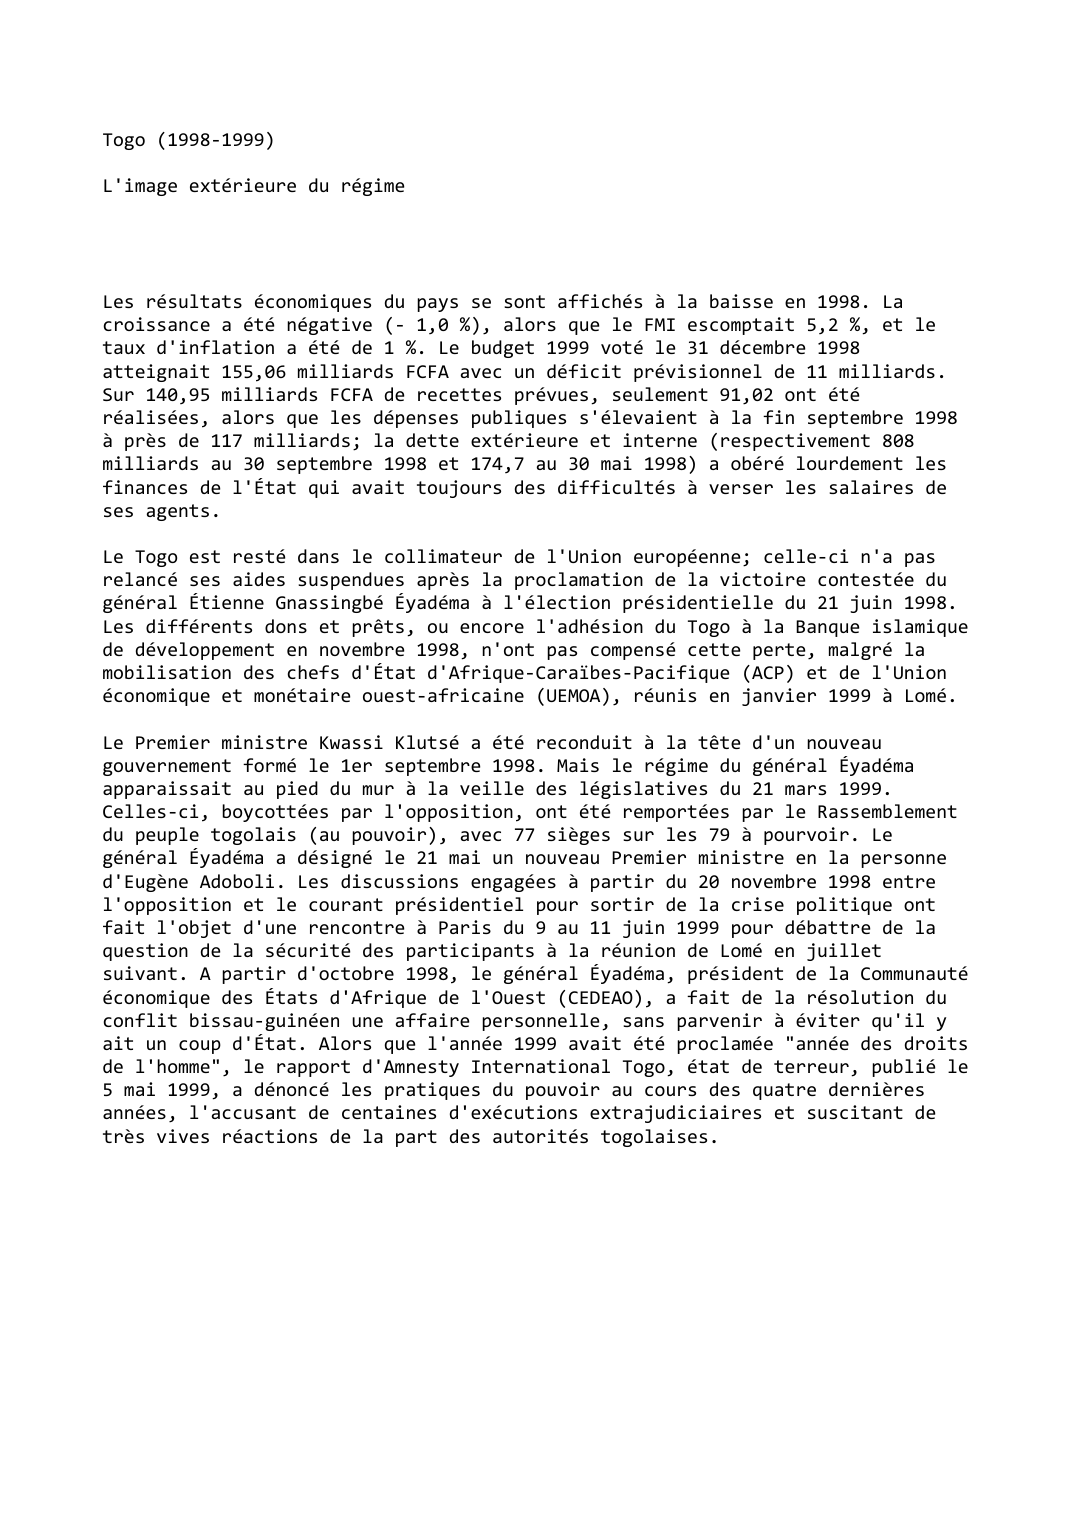 Prévisualisation du document Togo (1998-1999)

L'image extérieure du régime